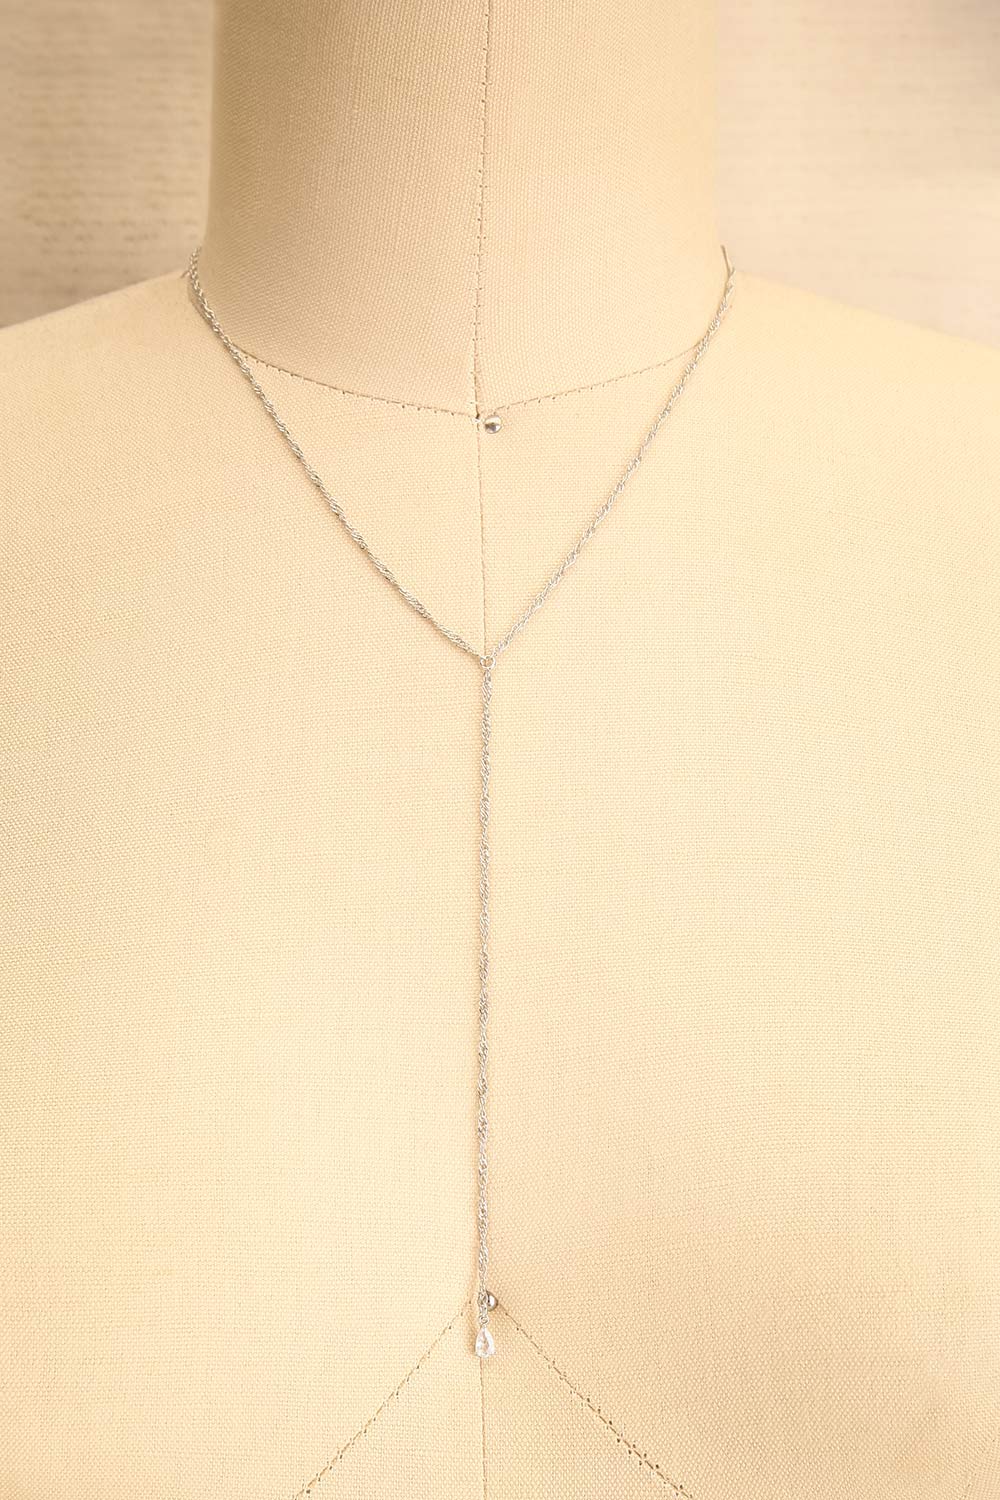 Konstantynow Silver Pendant Necklace w/ Teardrop Crystal  